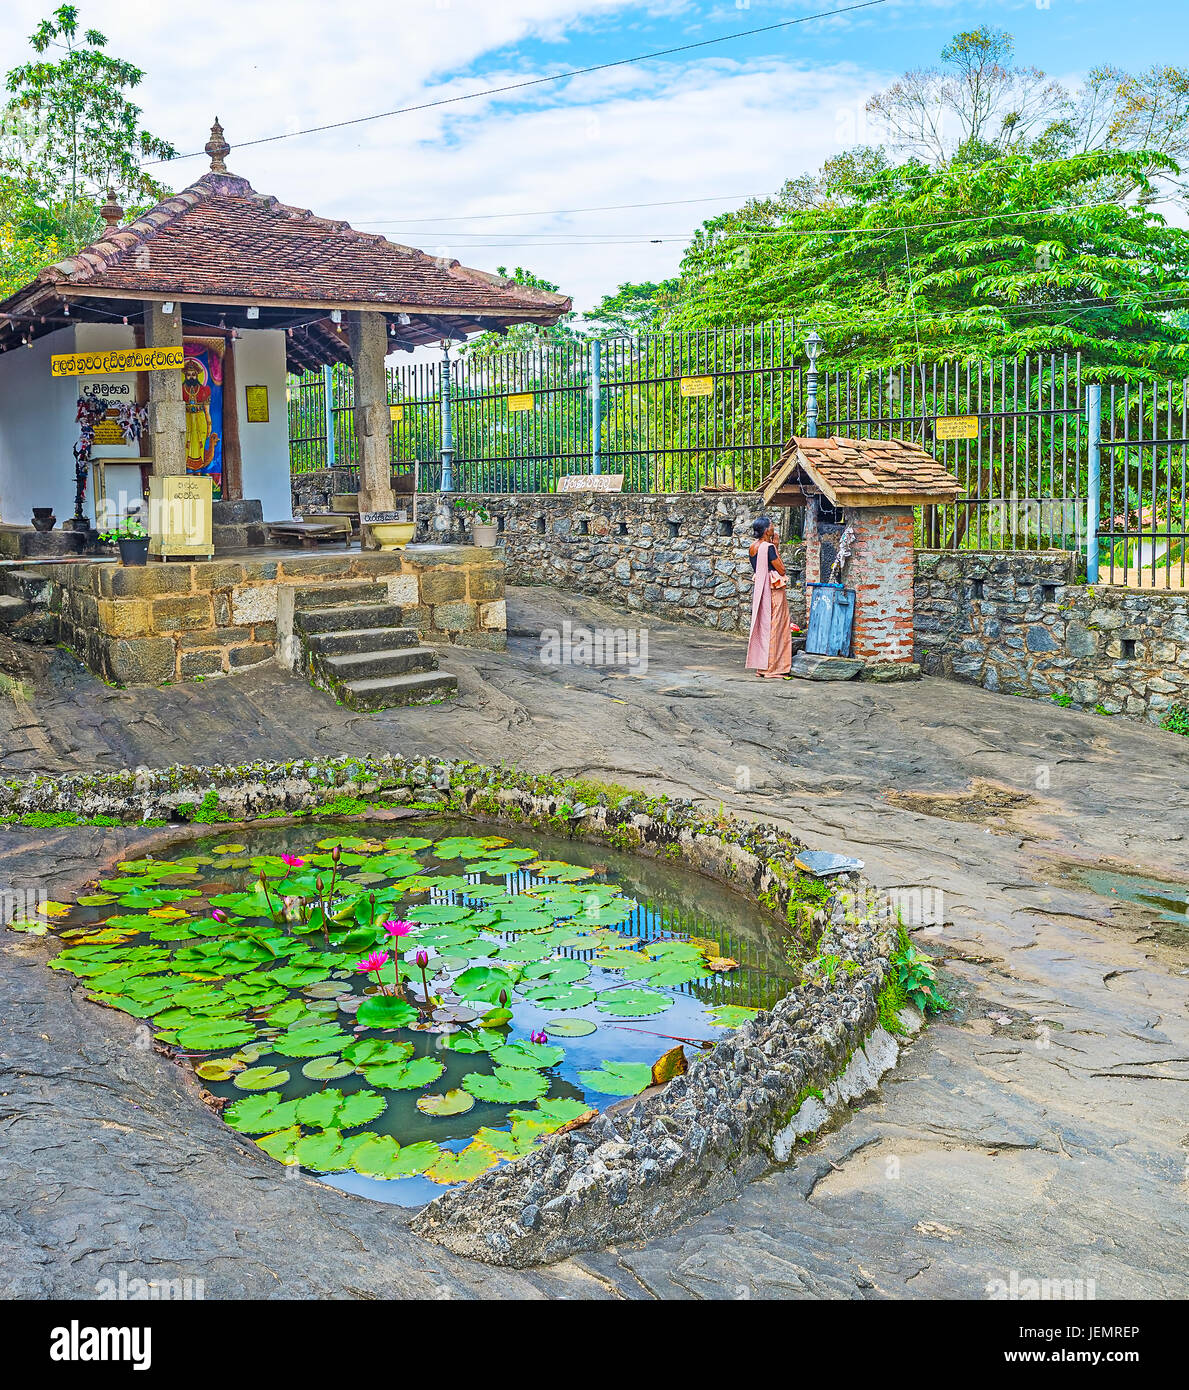 PILIMATHALAWA, SRI LANKA - le 11 novembre 2016 : Le petit étang avec des fleurs de lotus est sculpté dans la surface rocheuse de Gadaladeniya Temple bouddhiste Vihara compl Banque D'Images